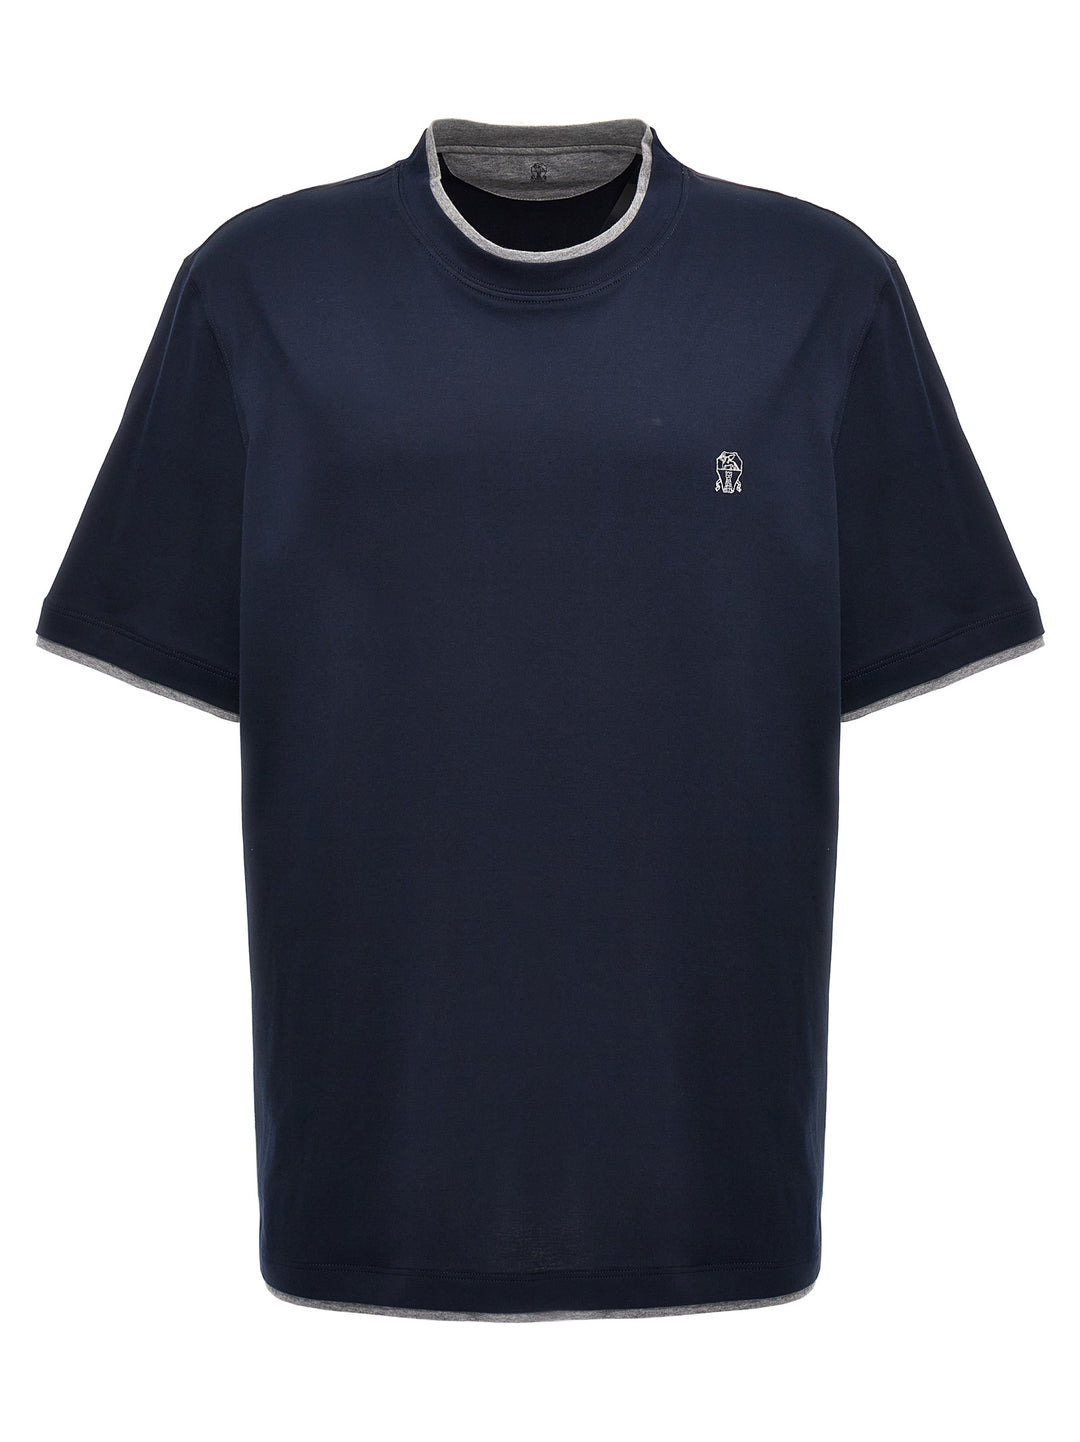 Double Layer T Shirt Blu